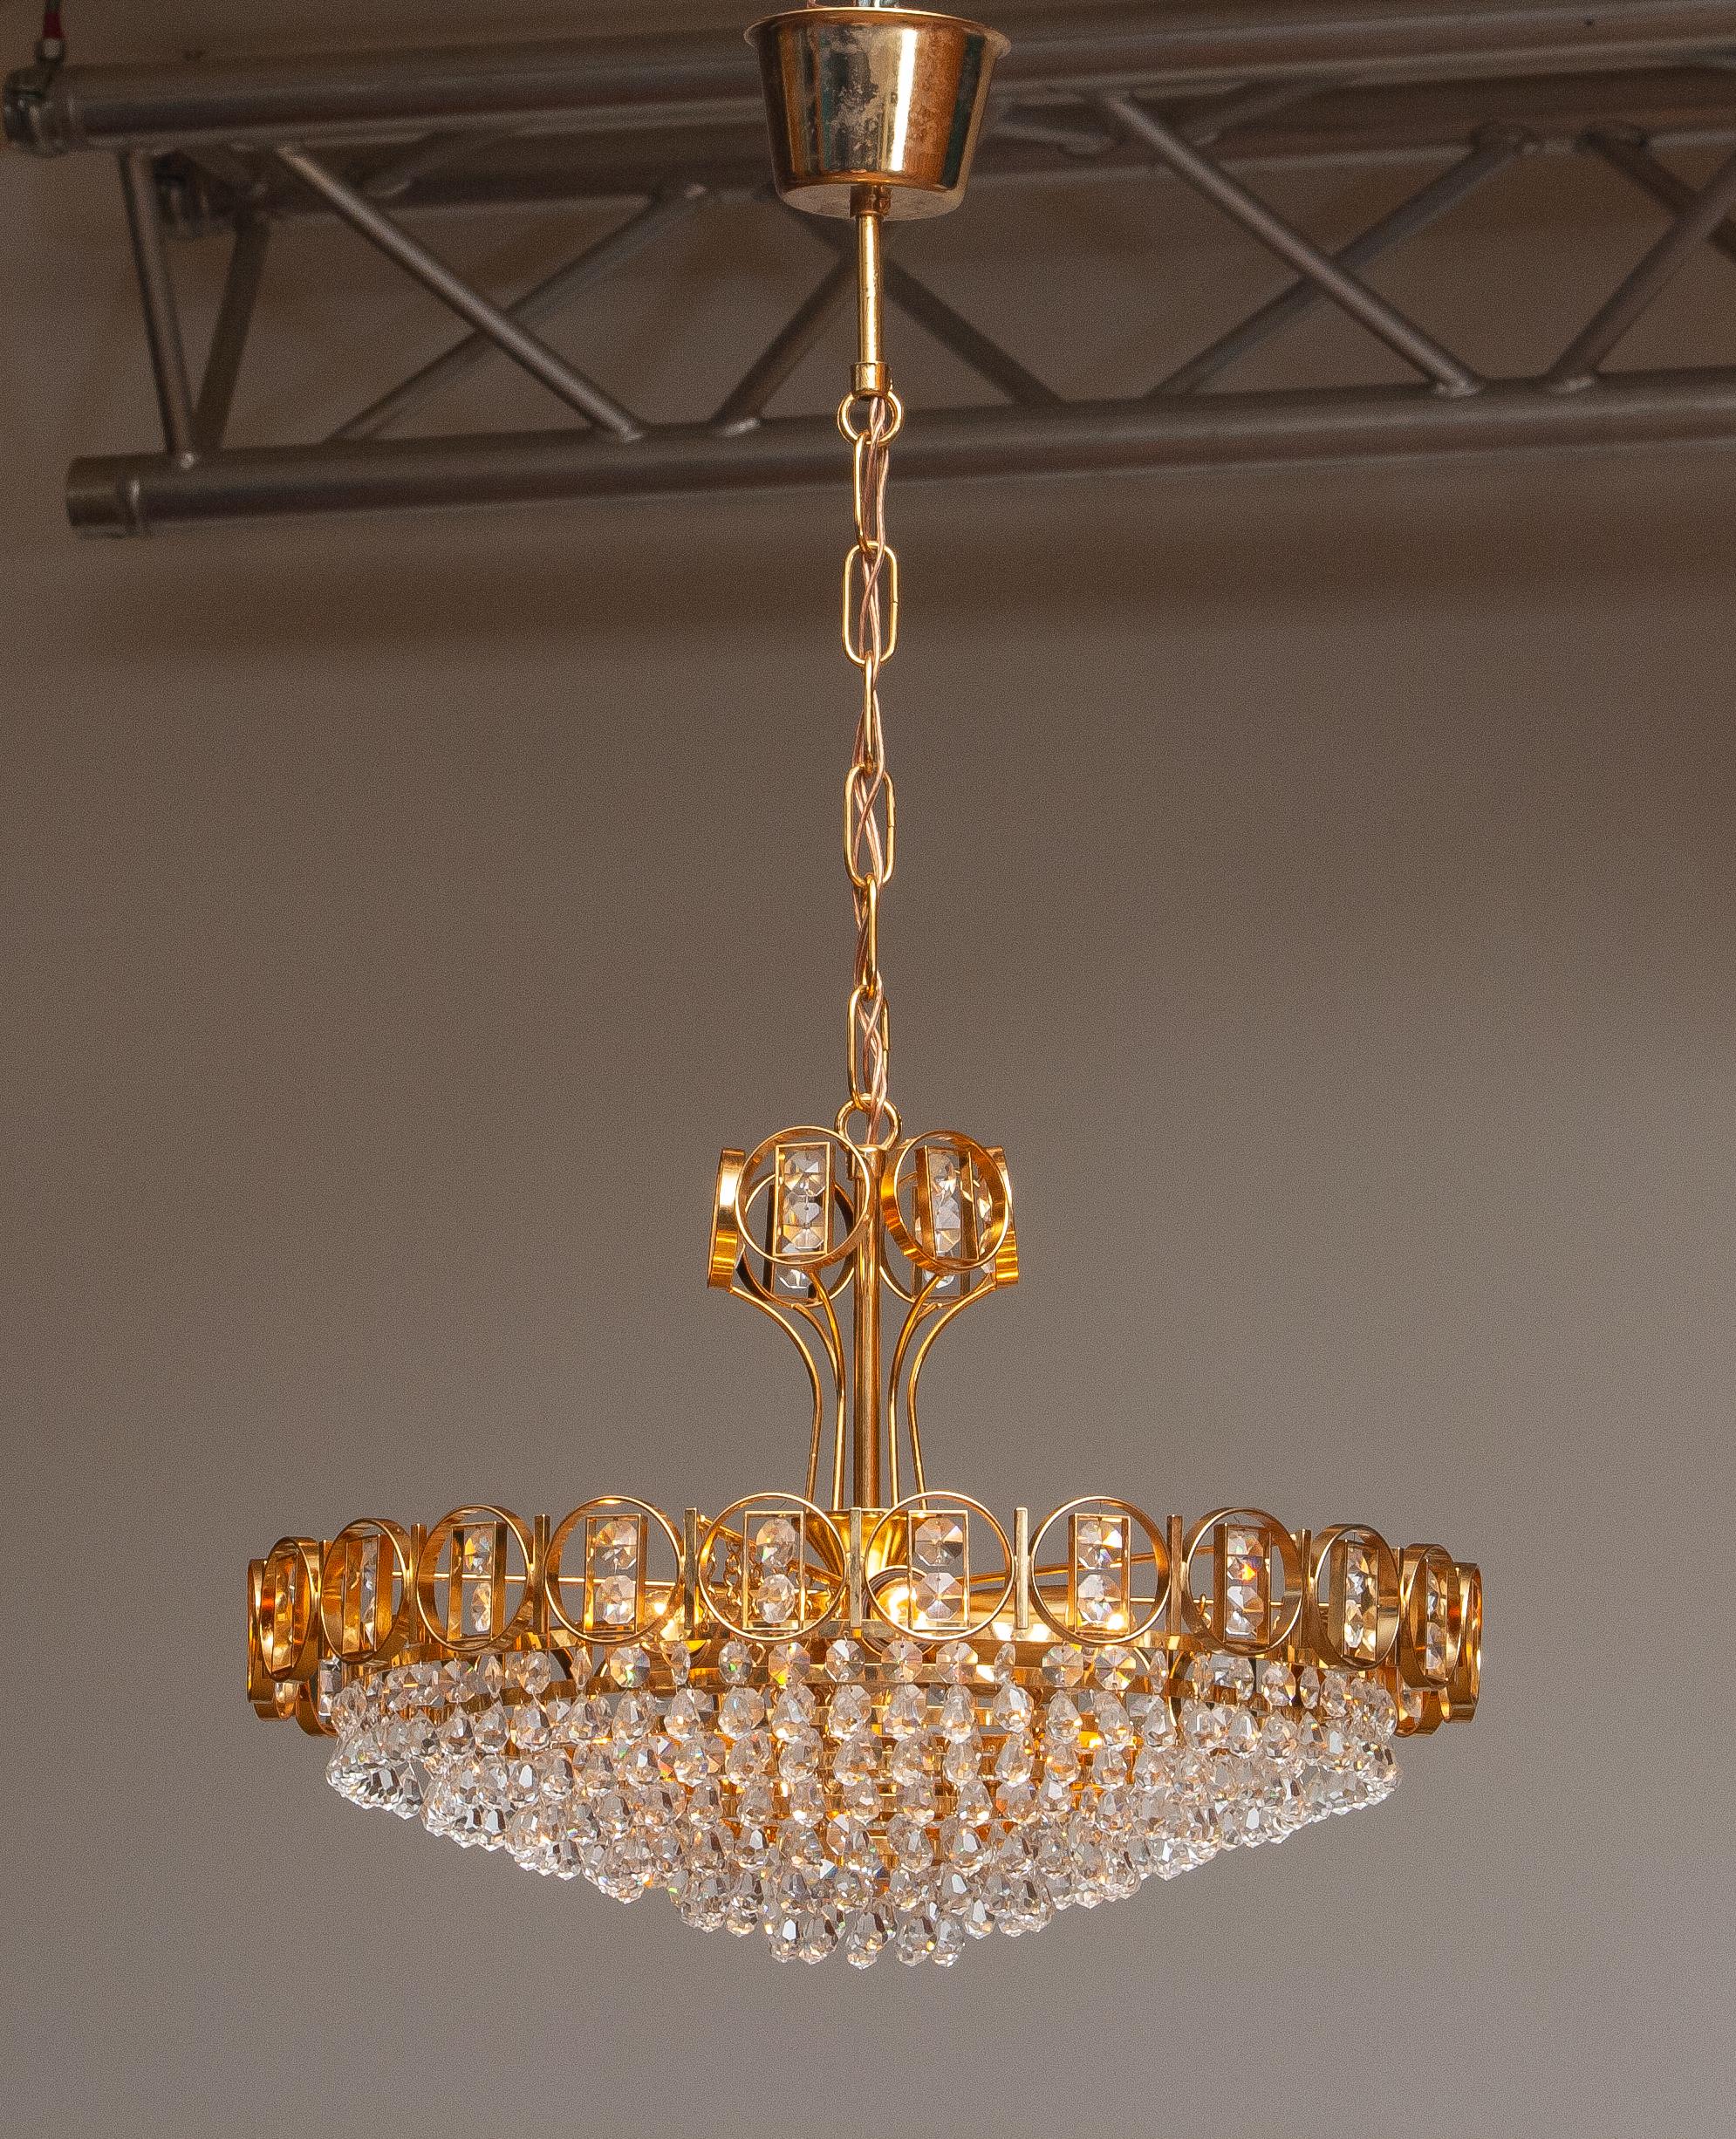 Magnifique lustre en laiton doré serti de cristaux facettés réalisé par Palwa, Allemagne, 1970.
Ce lustre est composé d'une couronne plaquée or avec à l'intérieur six anneaux tressés en or et sertis de cristaux et, au sommet, d'une couronne tressée